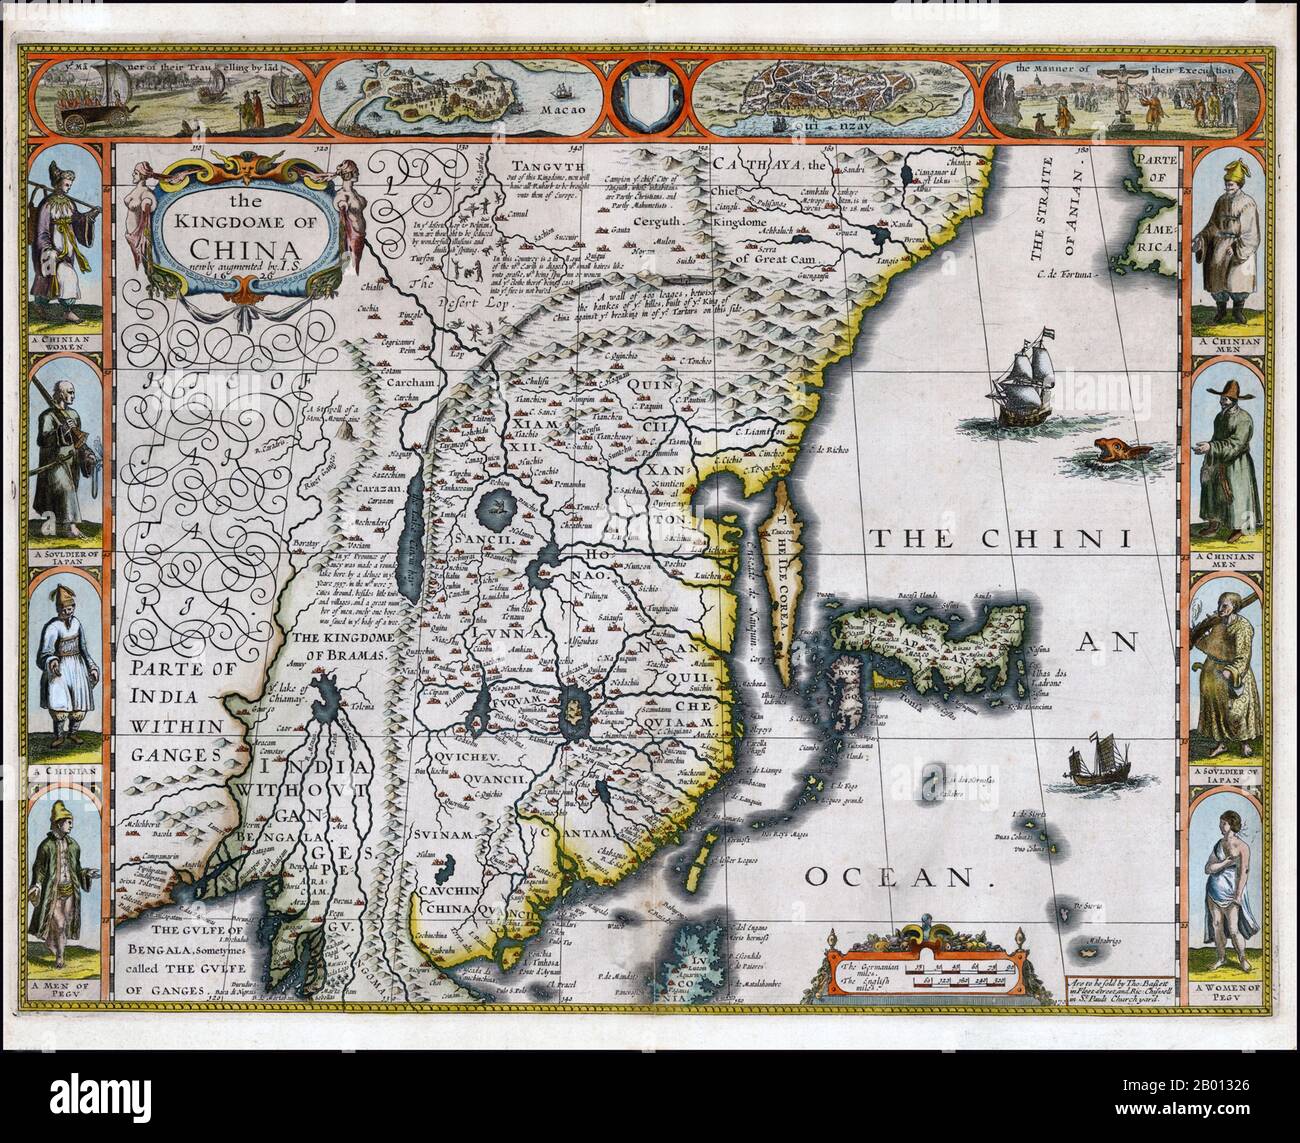 Chine: Une carte anglaise de l'Empire Ming par John Speed (1552 - 28 juillet 1629), 1626. John Speed (1552-1629) était un cartographe et historien élisabéthain. Il a été considéré comme l'un des cartographes anglais les plus connus du début de la période moderne. Cette carte a été produite vers la fin de la dynastie Ming (1368-1644). Banque D'Images